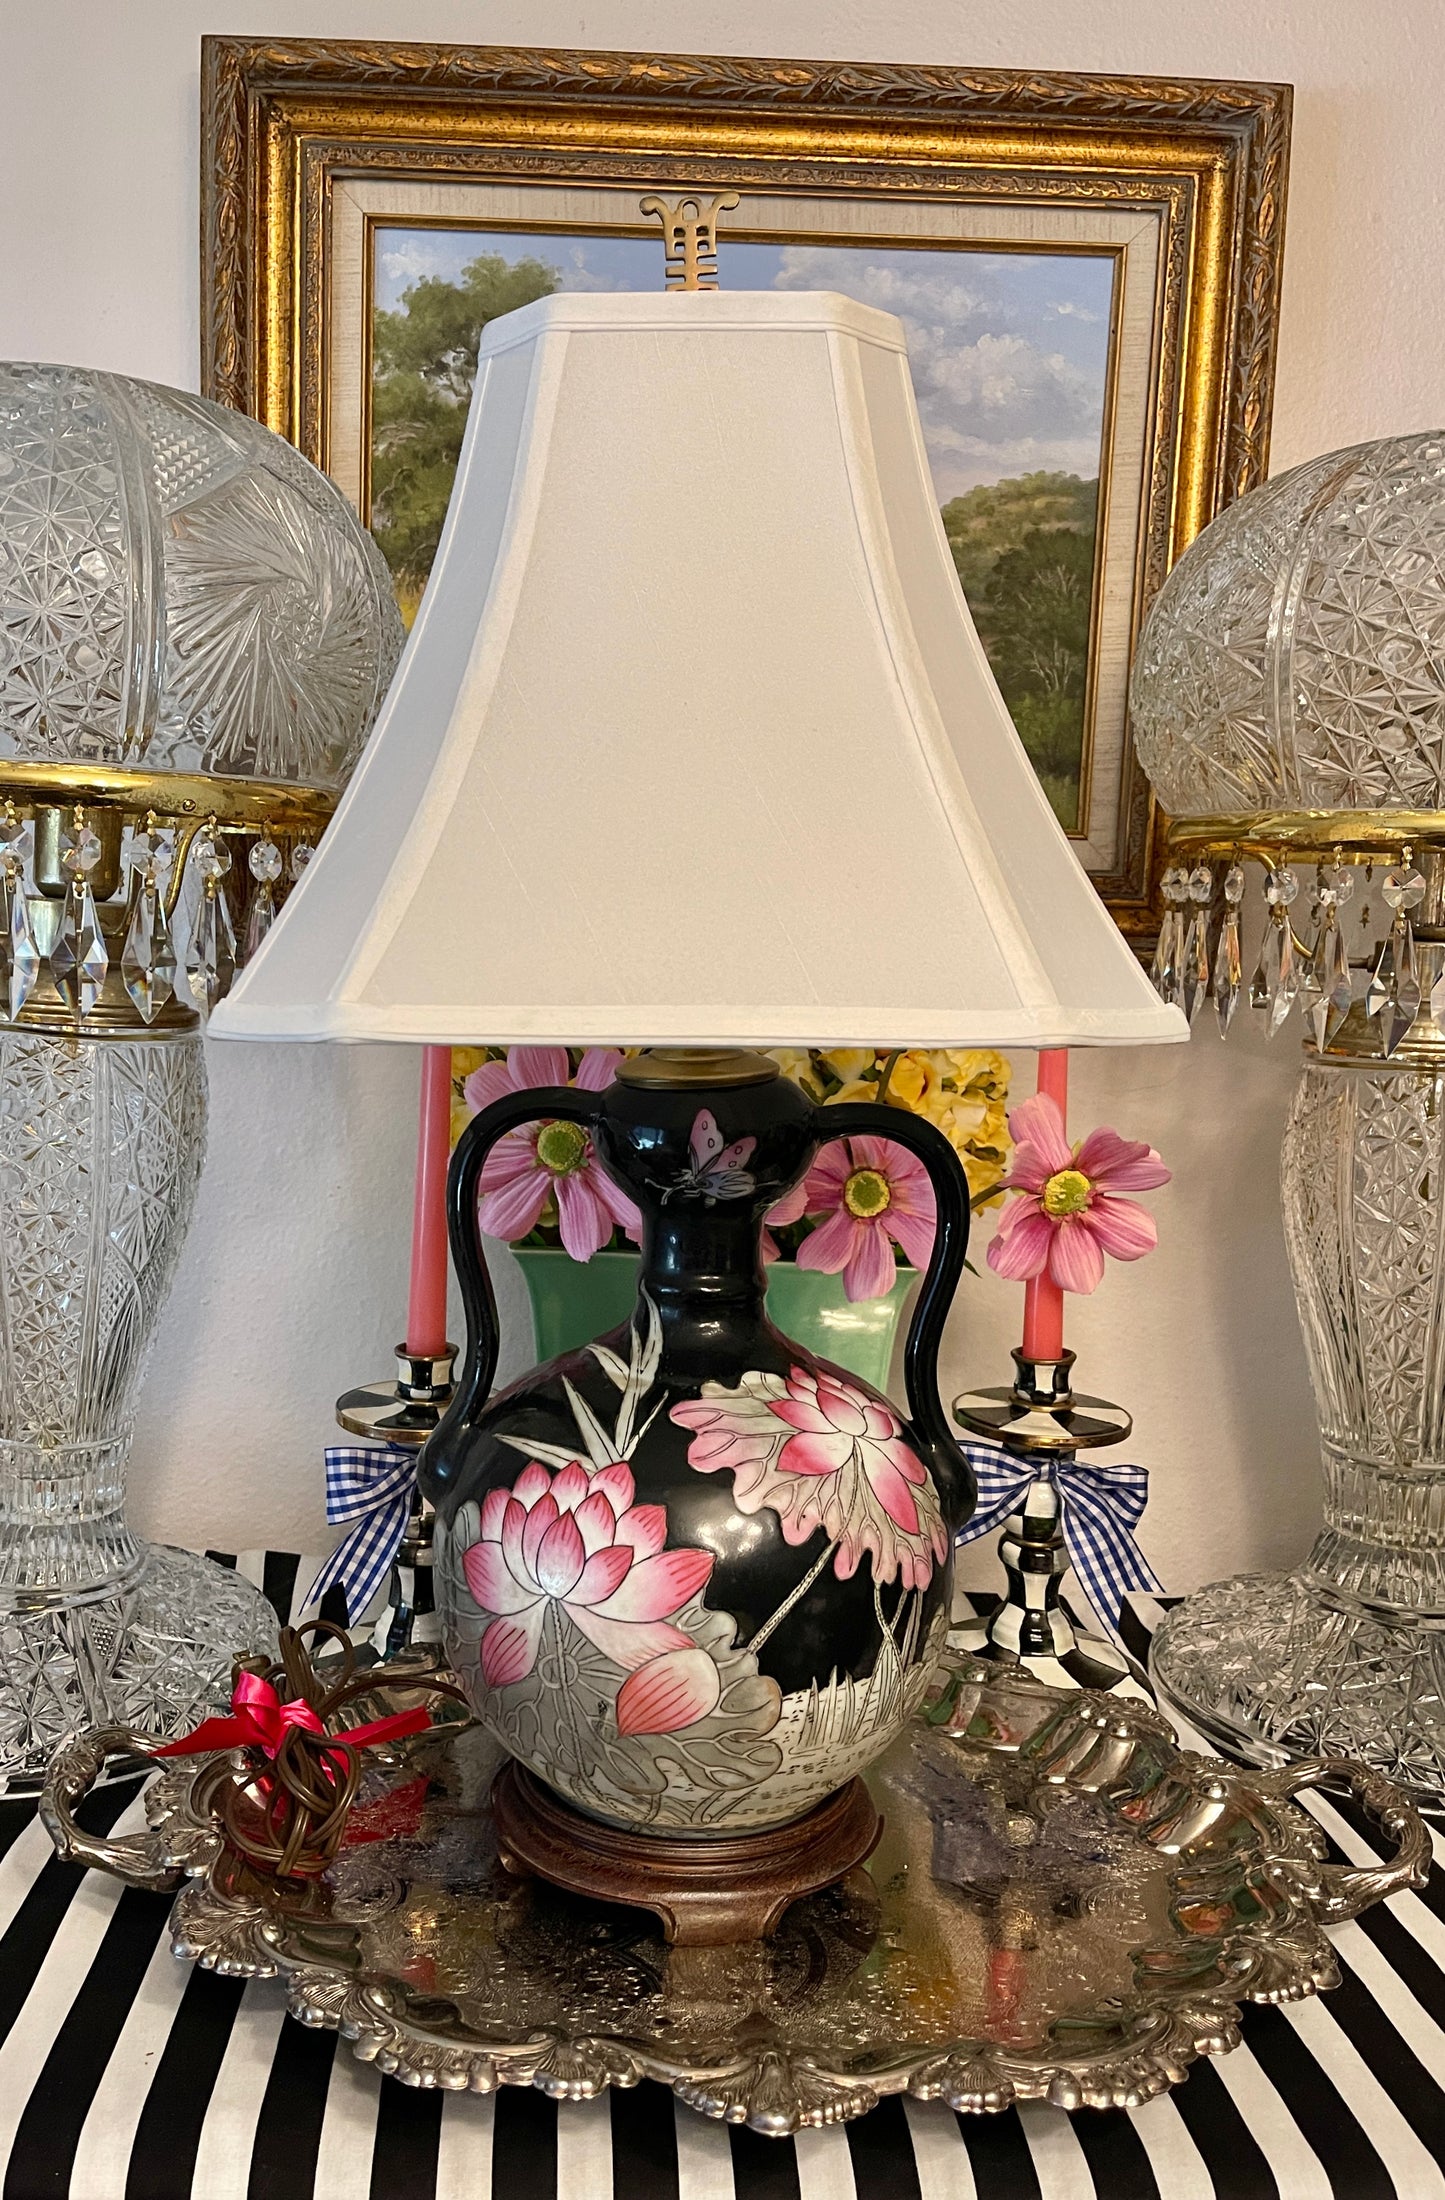 Black Polychrome Chinoiserie Double Handled Vase Lamp on Wood Base